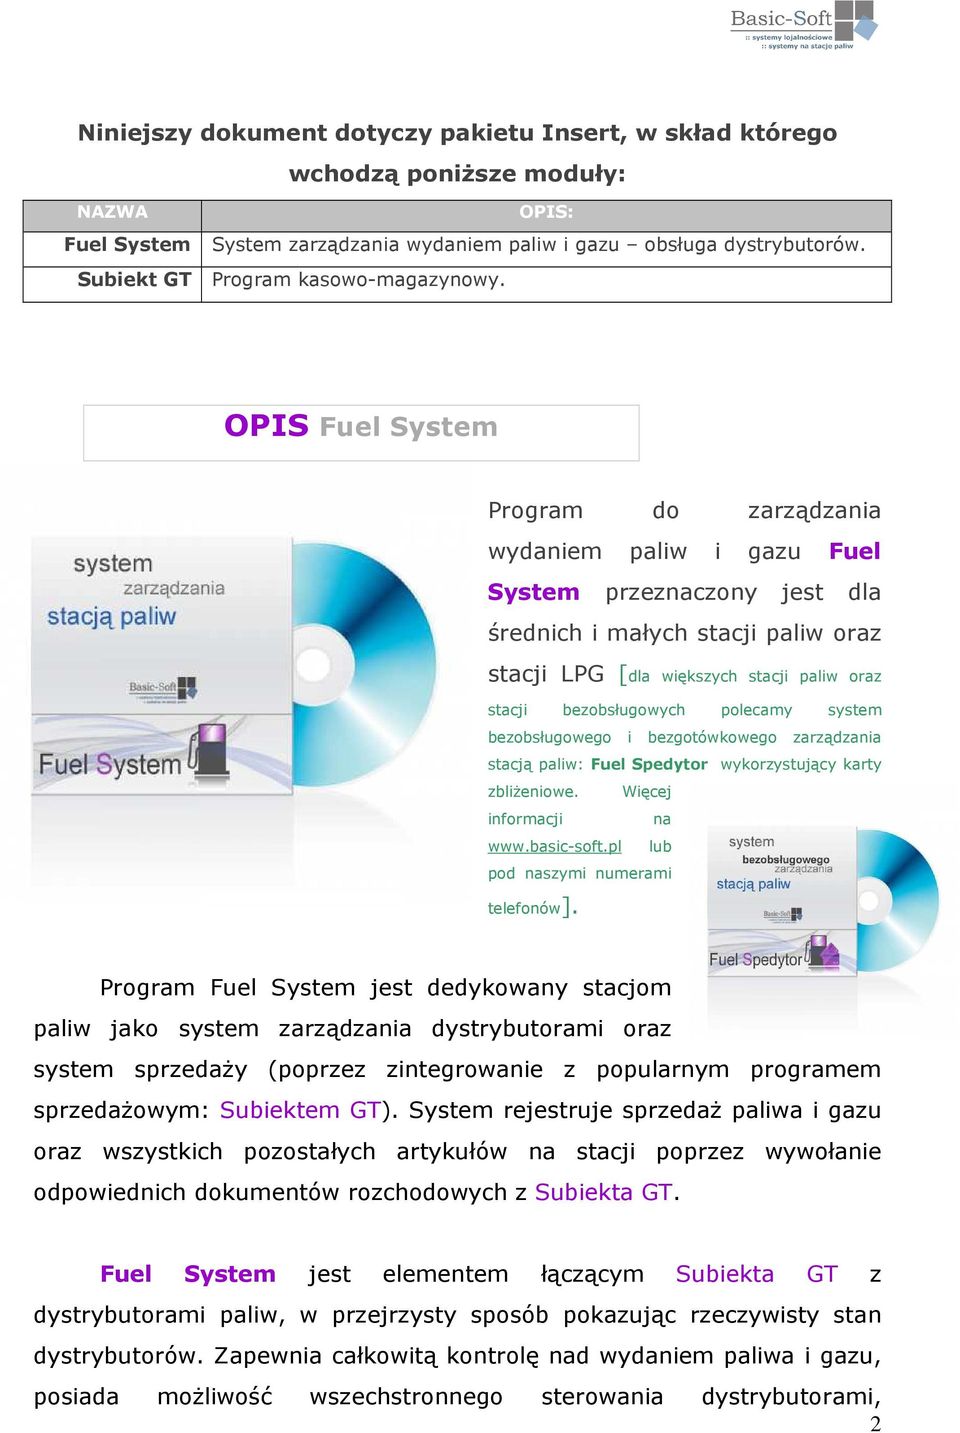 OPIS Fuel System Program do zarządzania wydaniem paliw i gazu Fuel System przeznaczony jest dla średnich i małych stacji paliw oraz stacji LPG [dla większych stacji paliw oraz stacji bezobsługowych